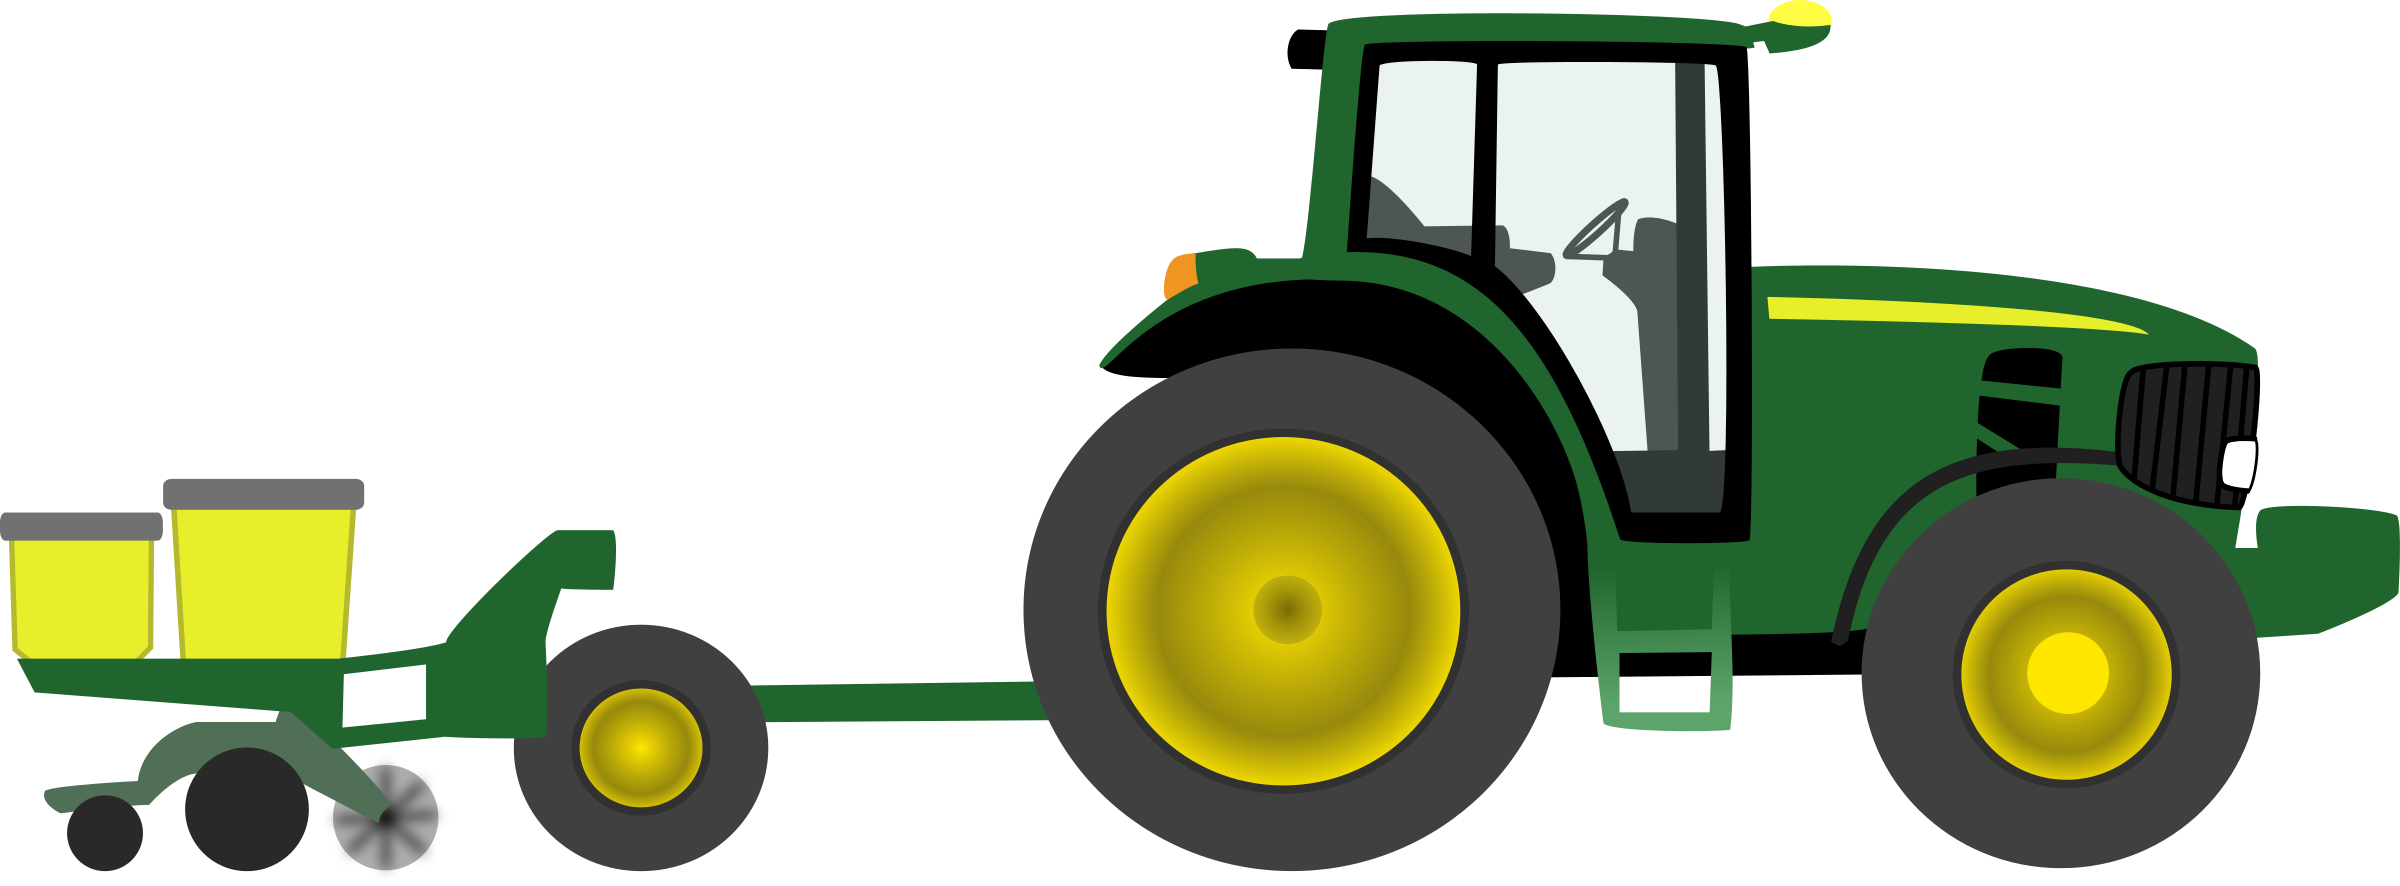 Green tractor clip art john deere free cliparts